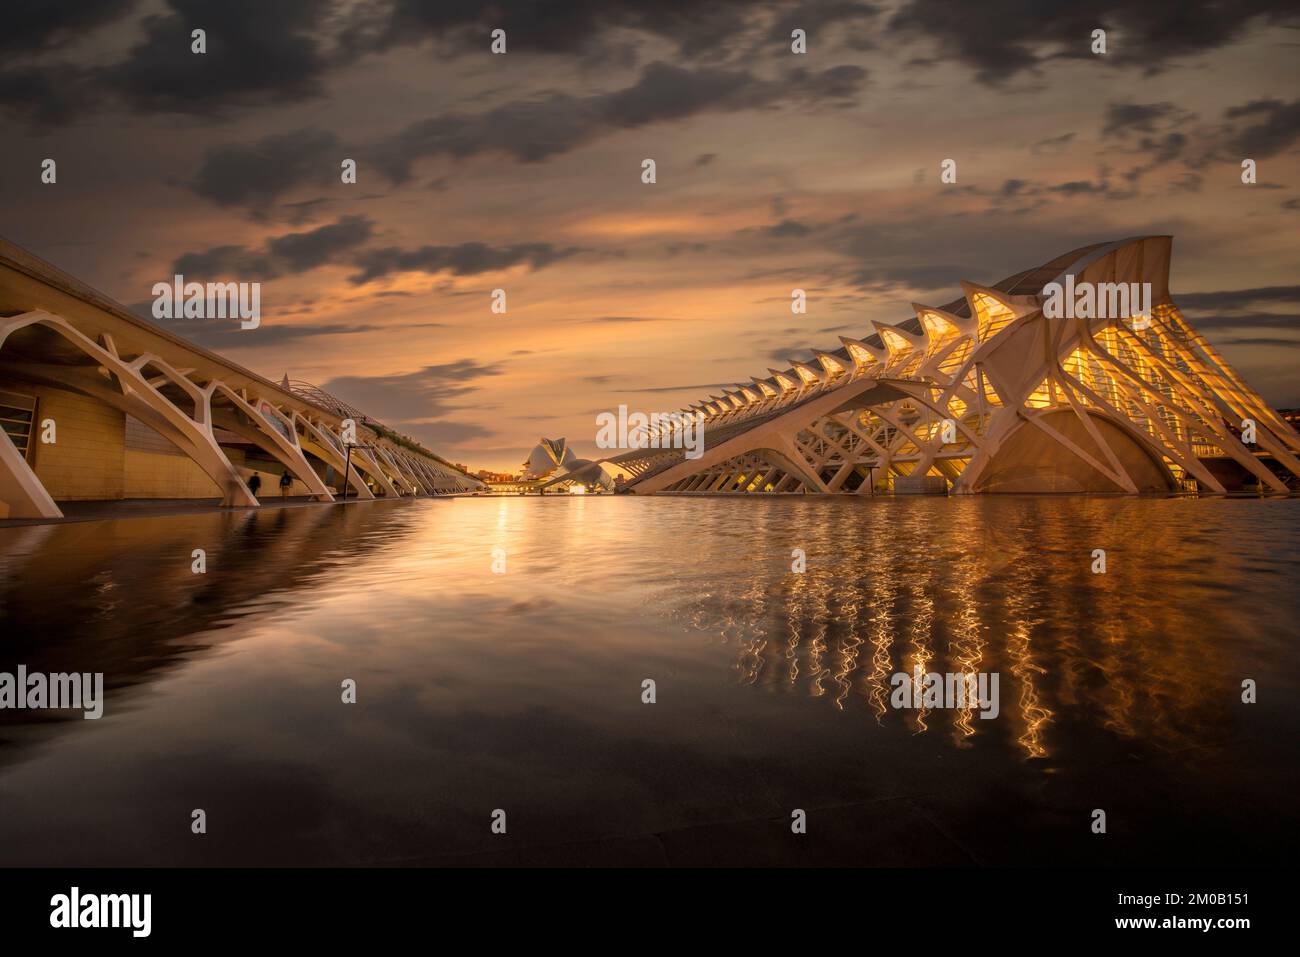 La Cité des Arts et des Sciences, Valence, Espagne, illuminée la nuit, réflexions dans l'eau. Banque D'Images